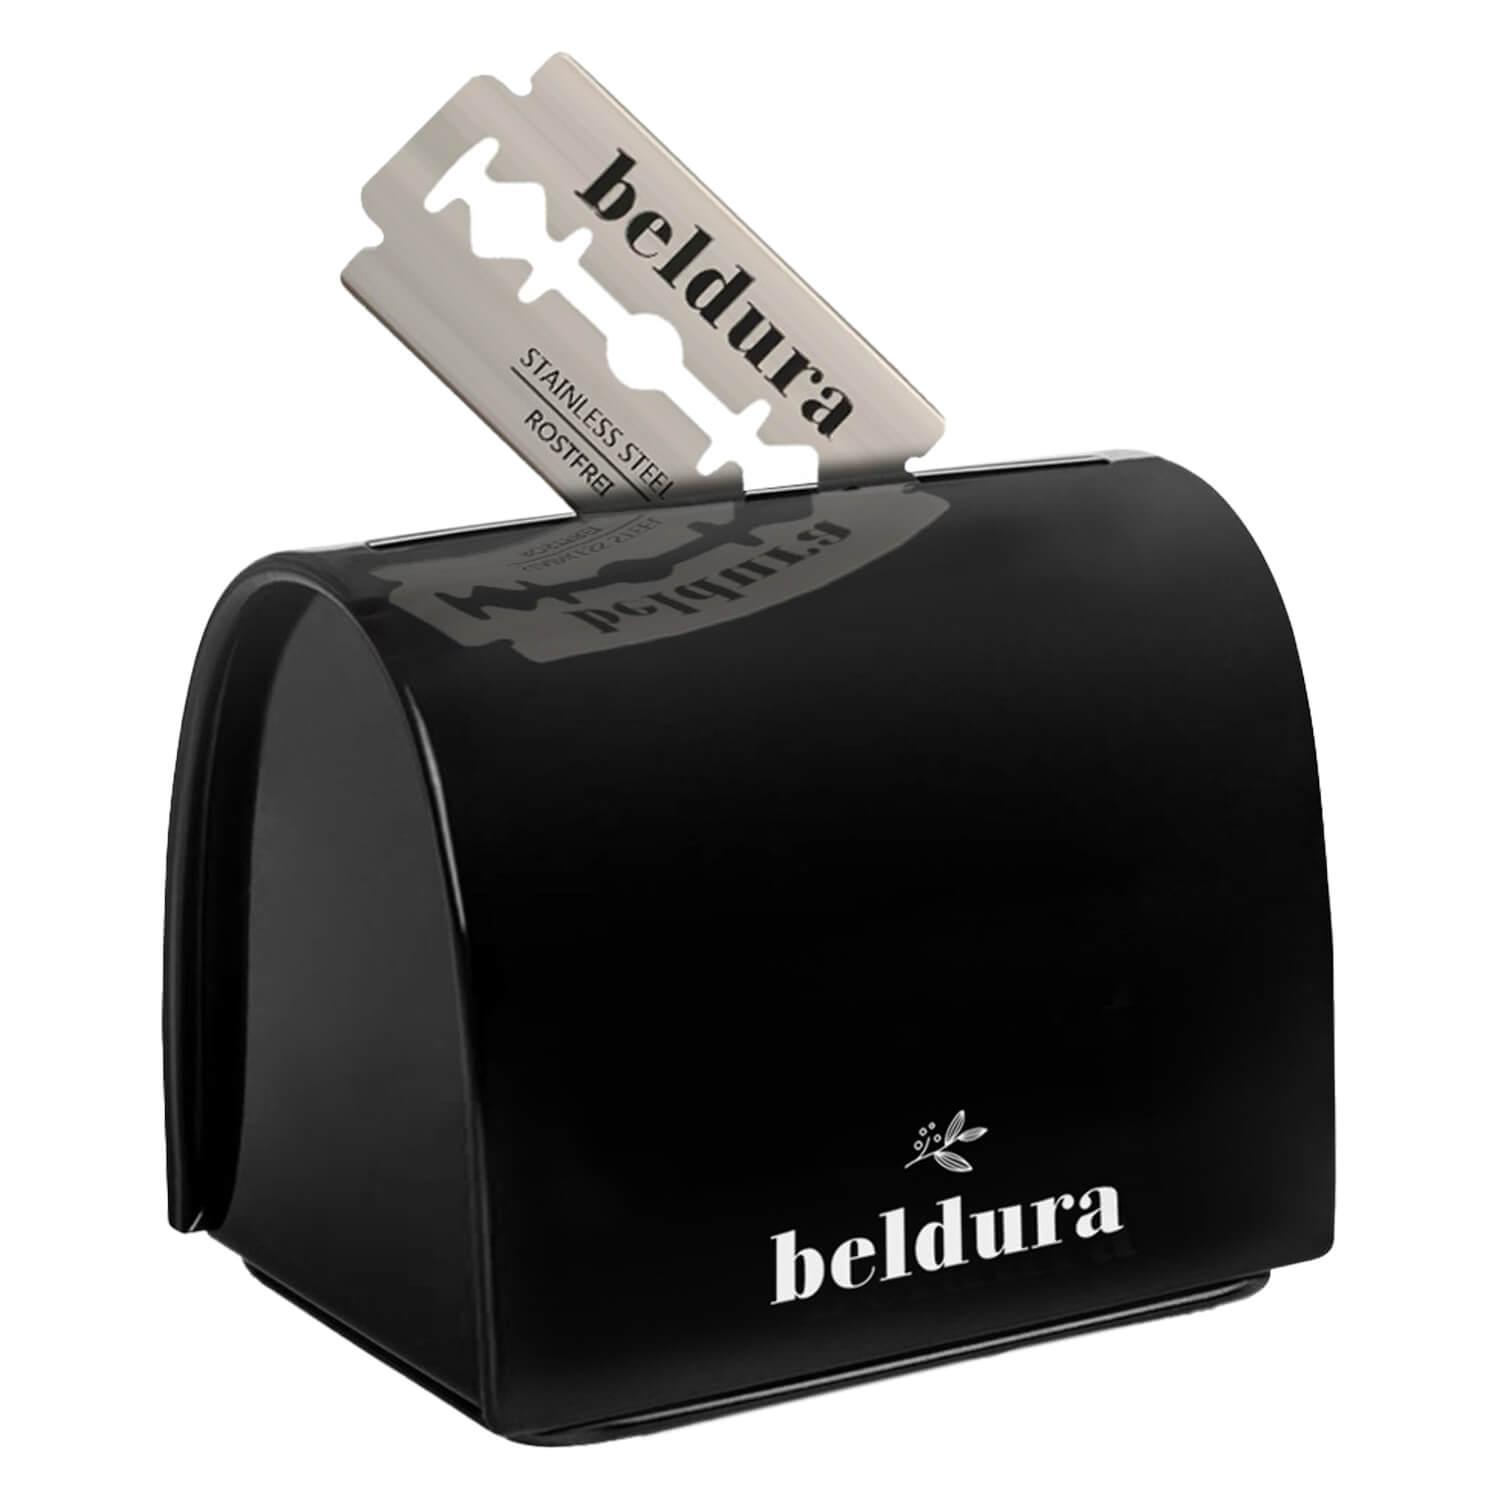 Beldura - Safety Razor Box